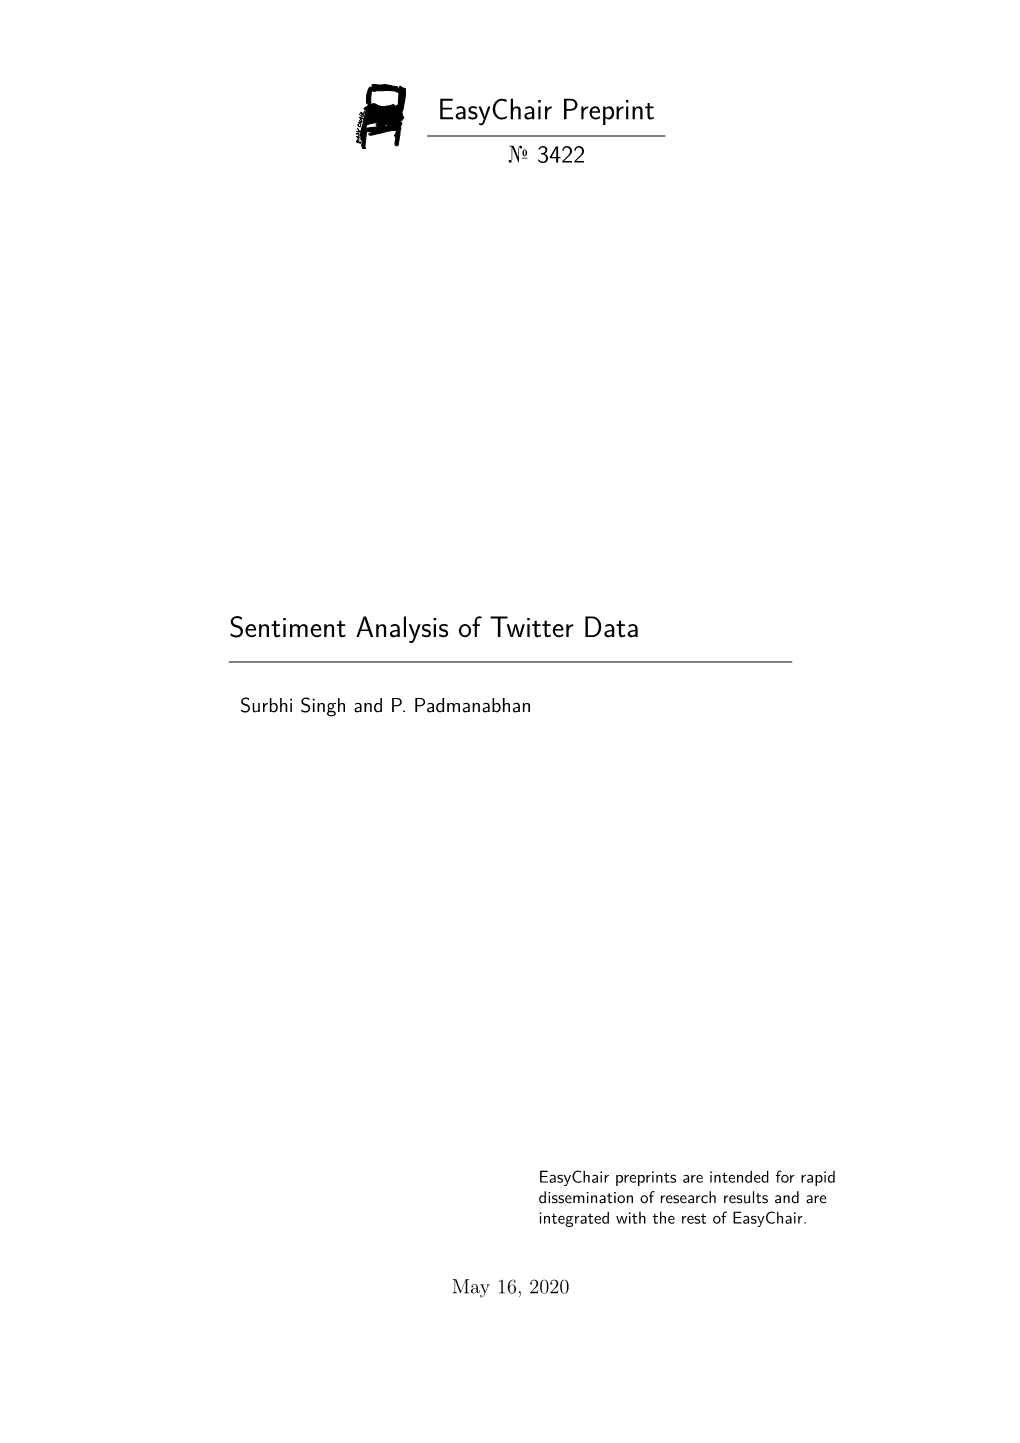 Easychair Preprint Sentiment Analysis of Twitter Data